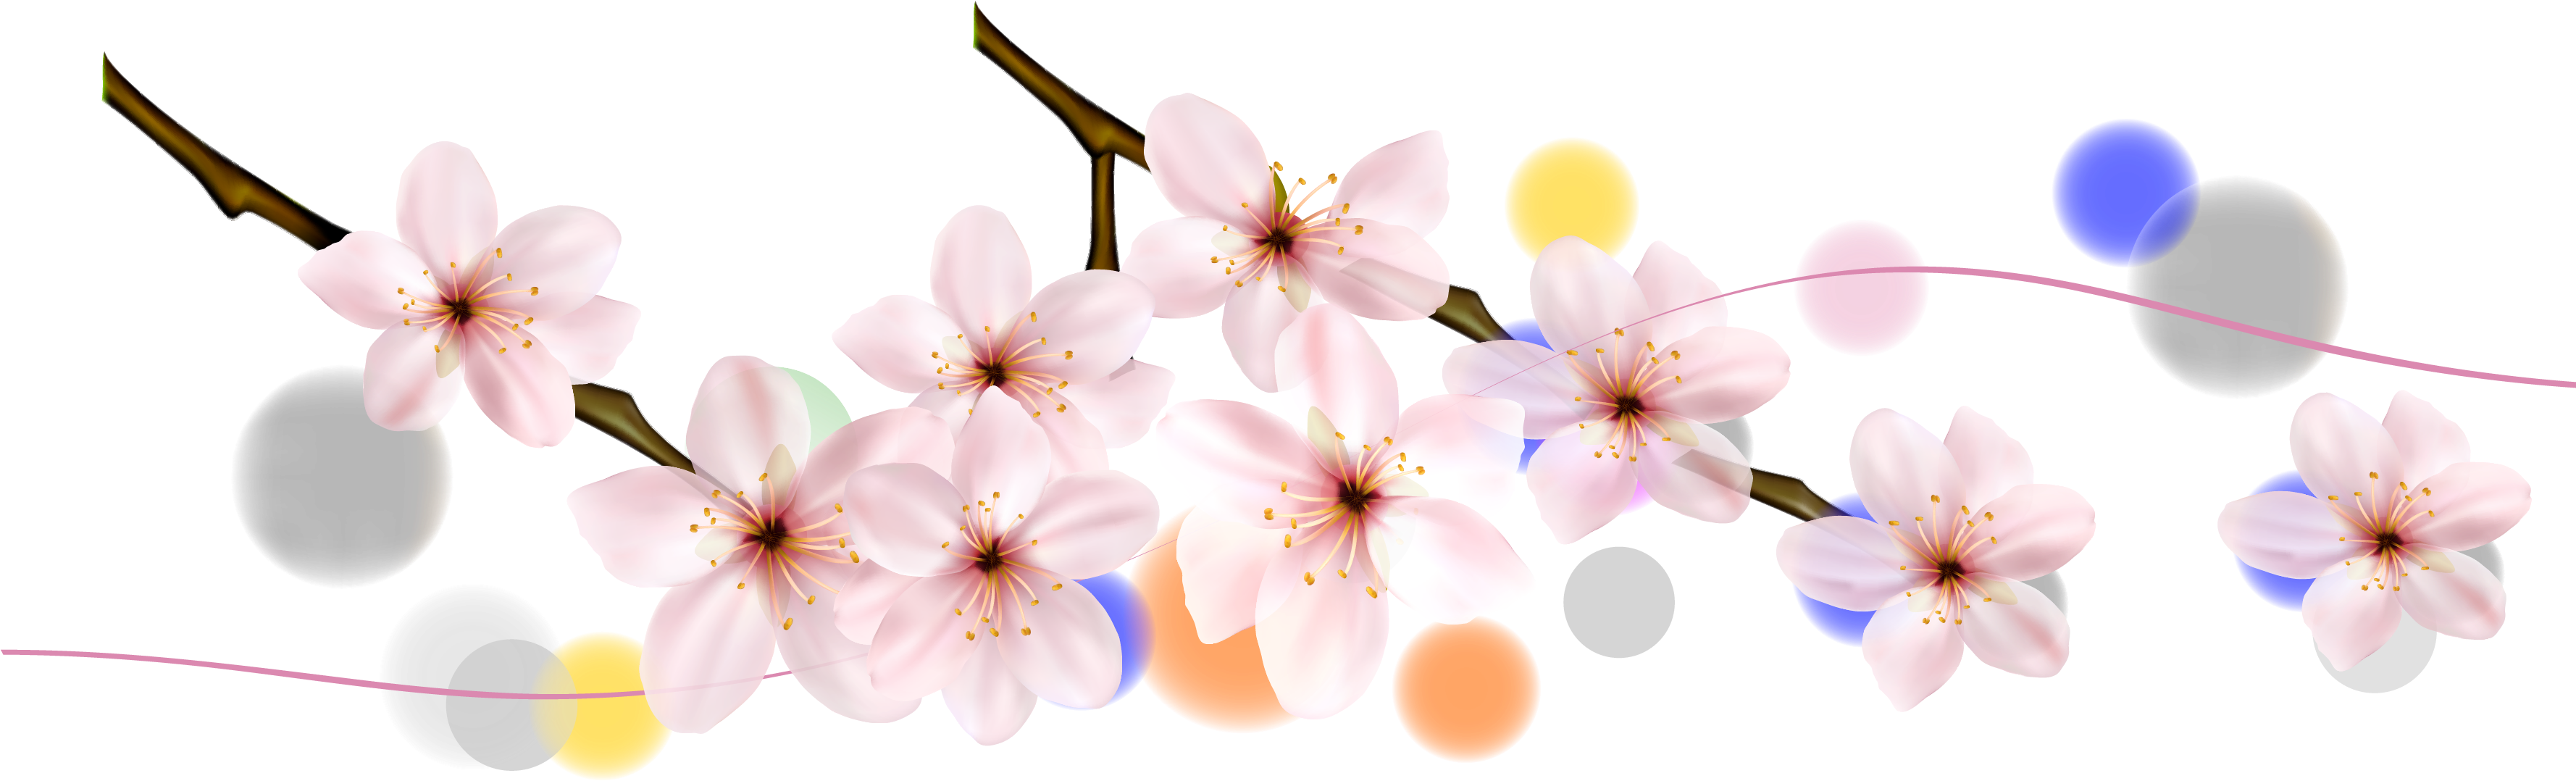 Cherry Blossom Petal Flower - Cherry Blossom (3555x2465)